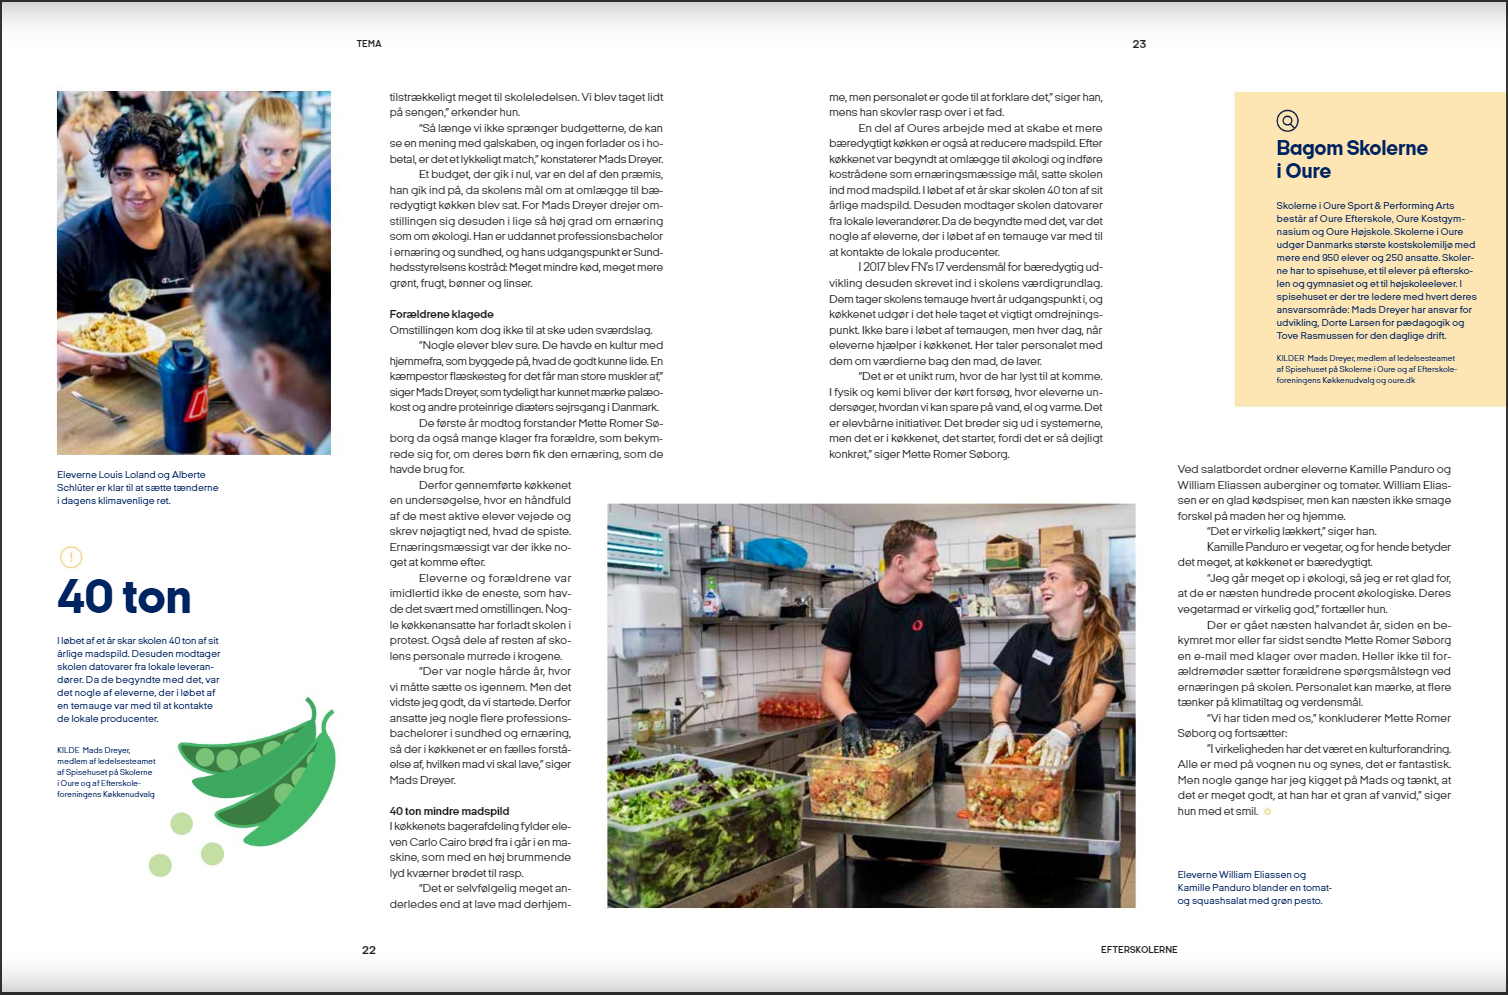 Side 3 i temaet om køkkenrevolution på efterskolerne